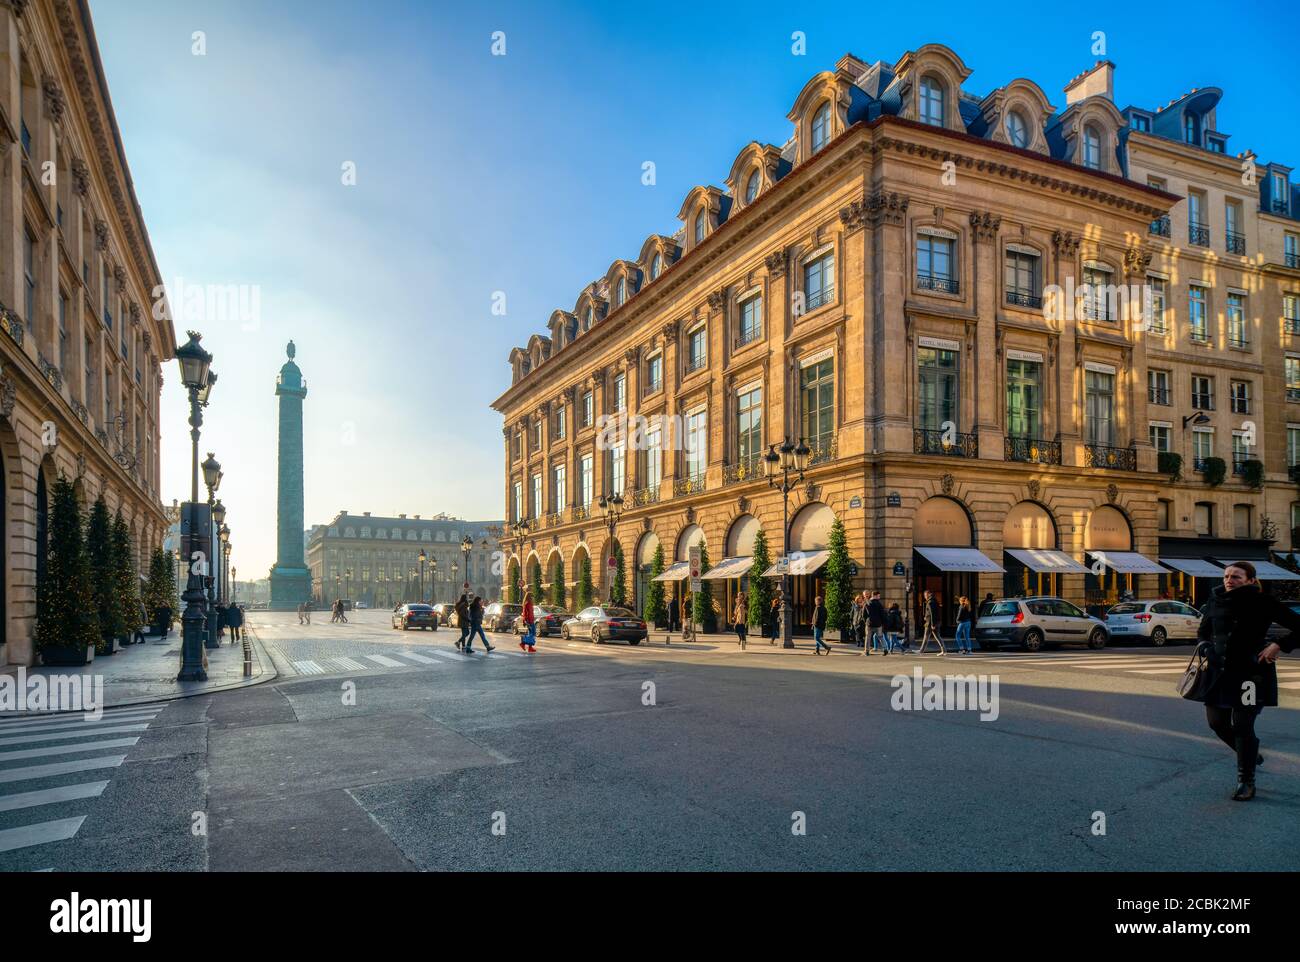 Place Vendome from Rue de la Paix, Paris, France. Stock Photo